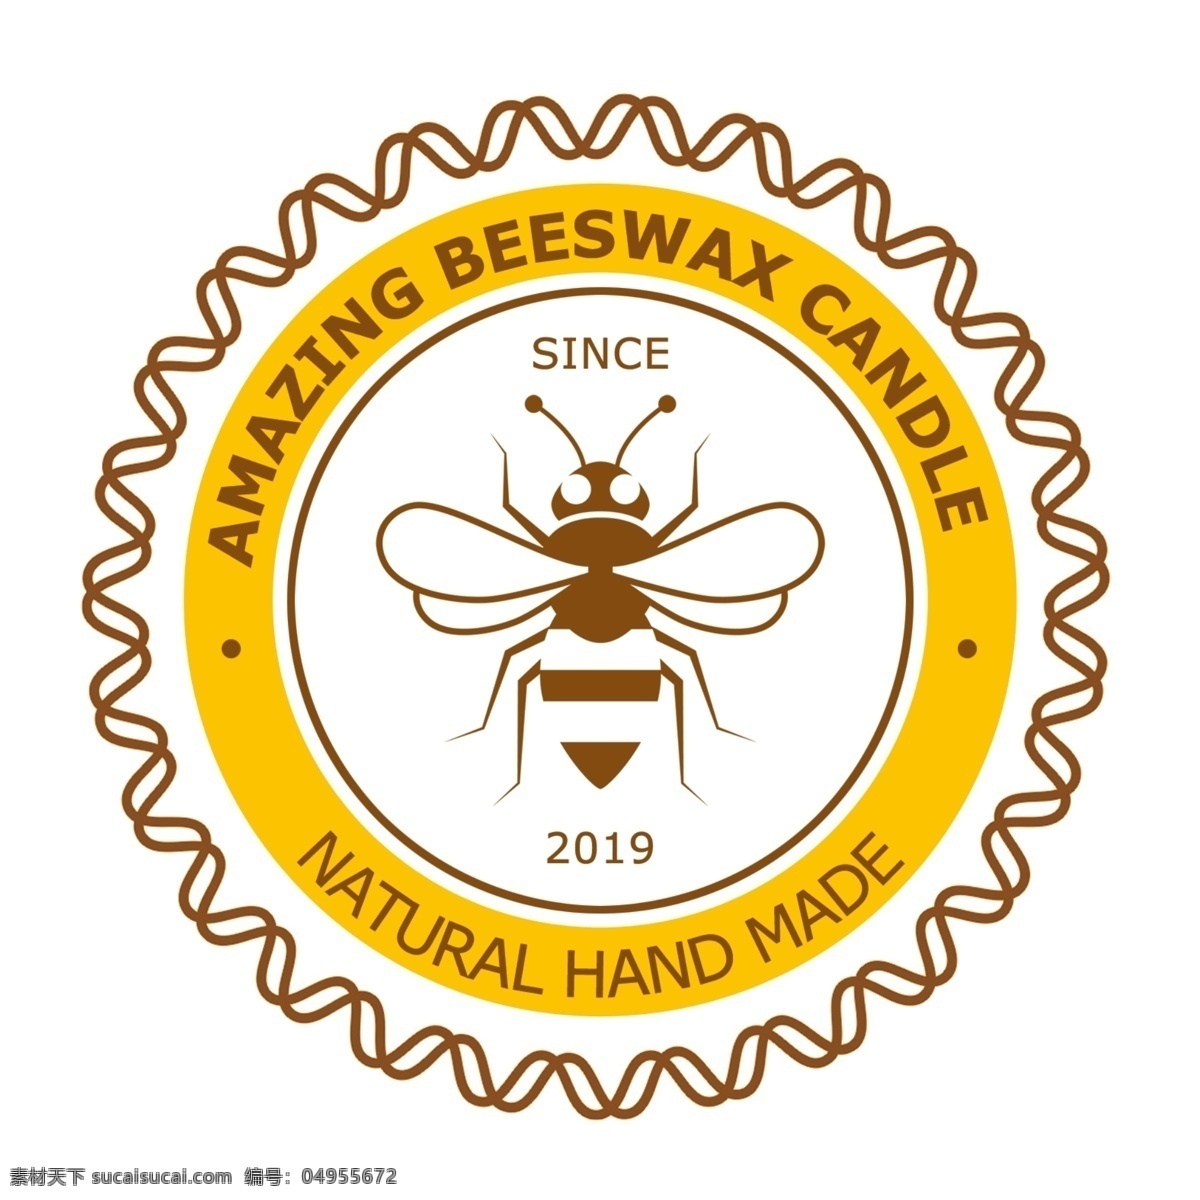 蜂蜡不干胶 不干胶 蜂蜡 小蜜蜂 其他设计 蜂巢 蜜蜂 采蜜 野生蜂蜜海报 蜂蜜海报 天然蜂蜜海报 进口蜂蜜海报 采花蜜海报 土蜂蜜海报 分层